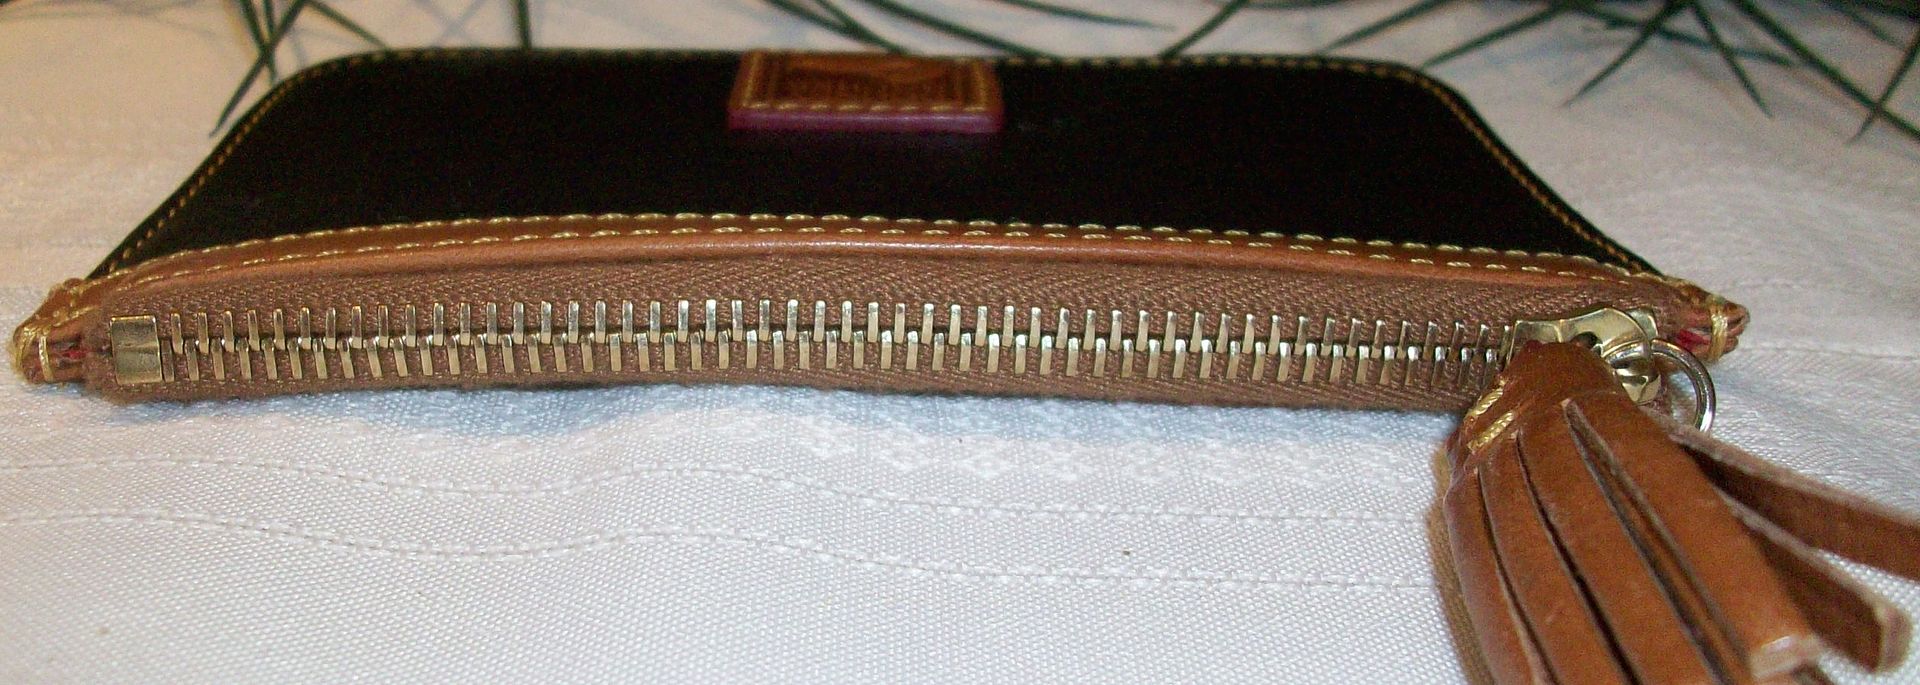 dooney textured leather zip top coin purse black top photo 100_0653.jpg